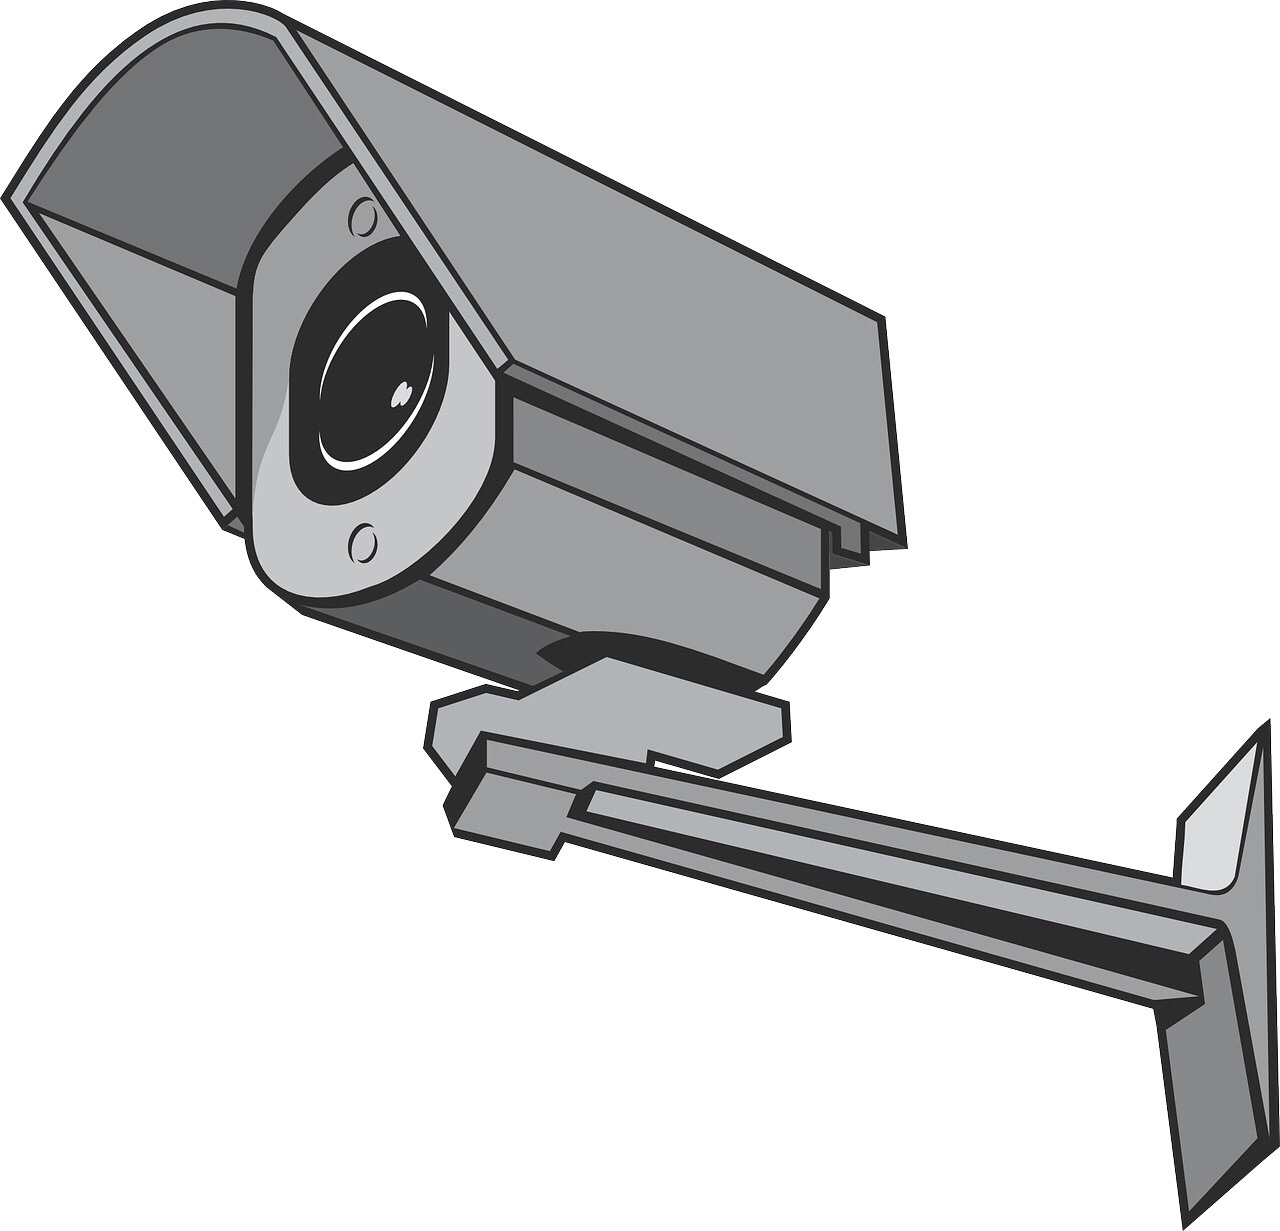 A Zone防犯カメラを自宅屋外に設置レビュー メリットと実際の設置方法を写真入りで解説 はげまるブログ